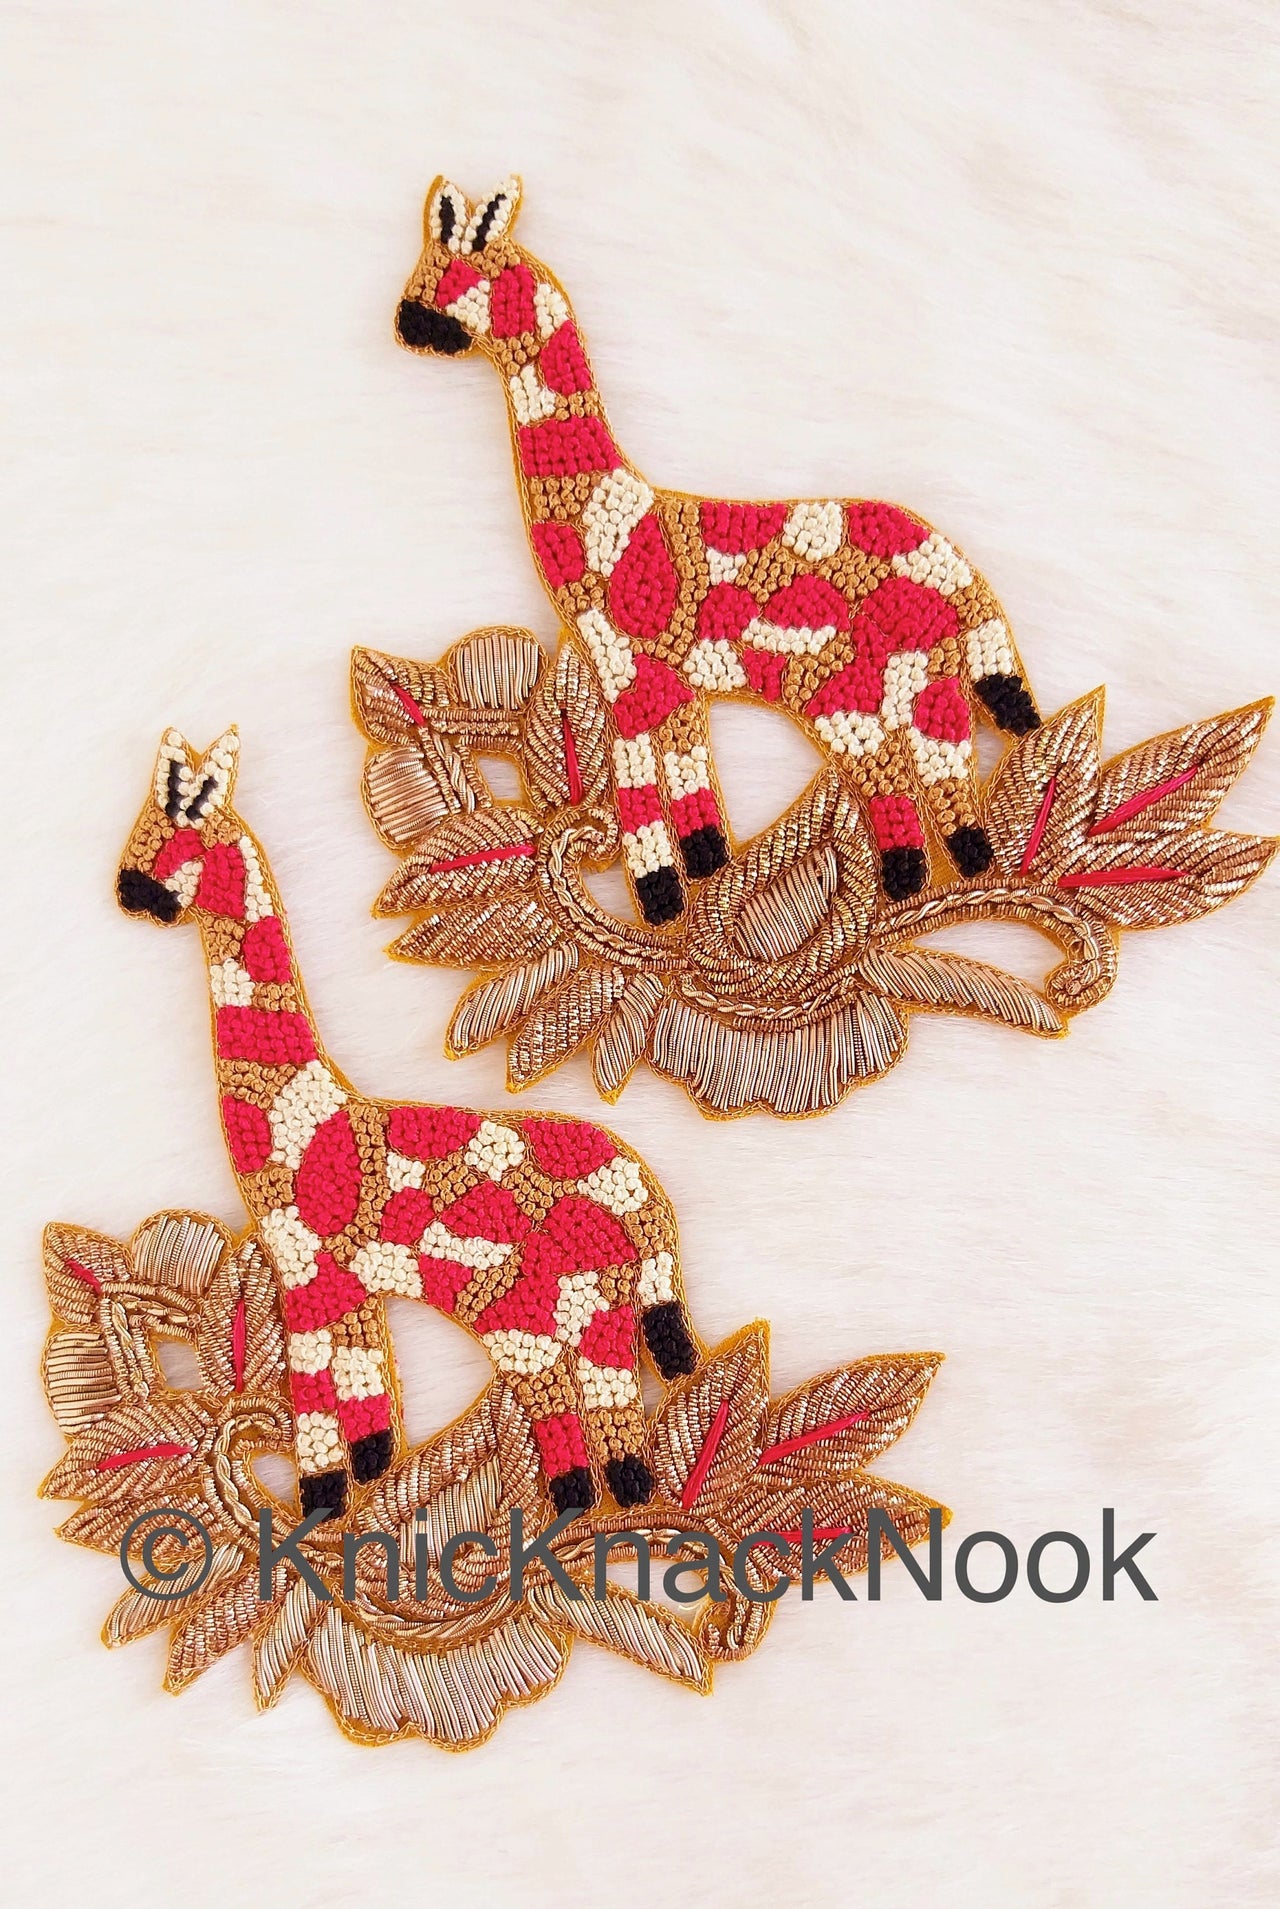 Hand Embroidered Giraffe Applique In Gold, Beige, Red And Black Zardozi Threadwork